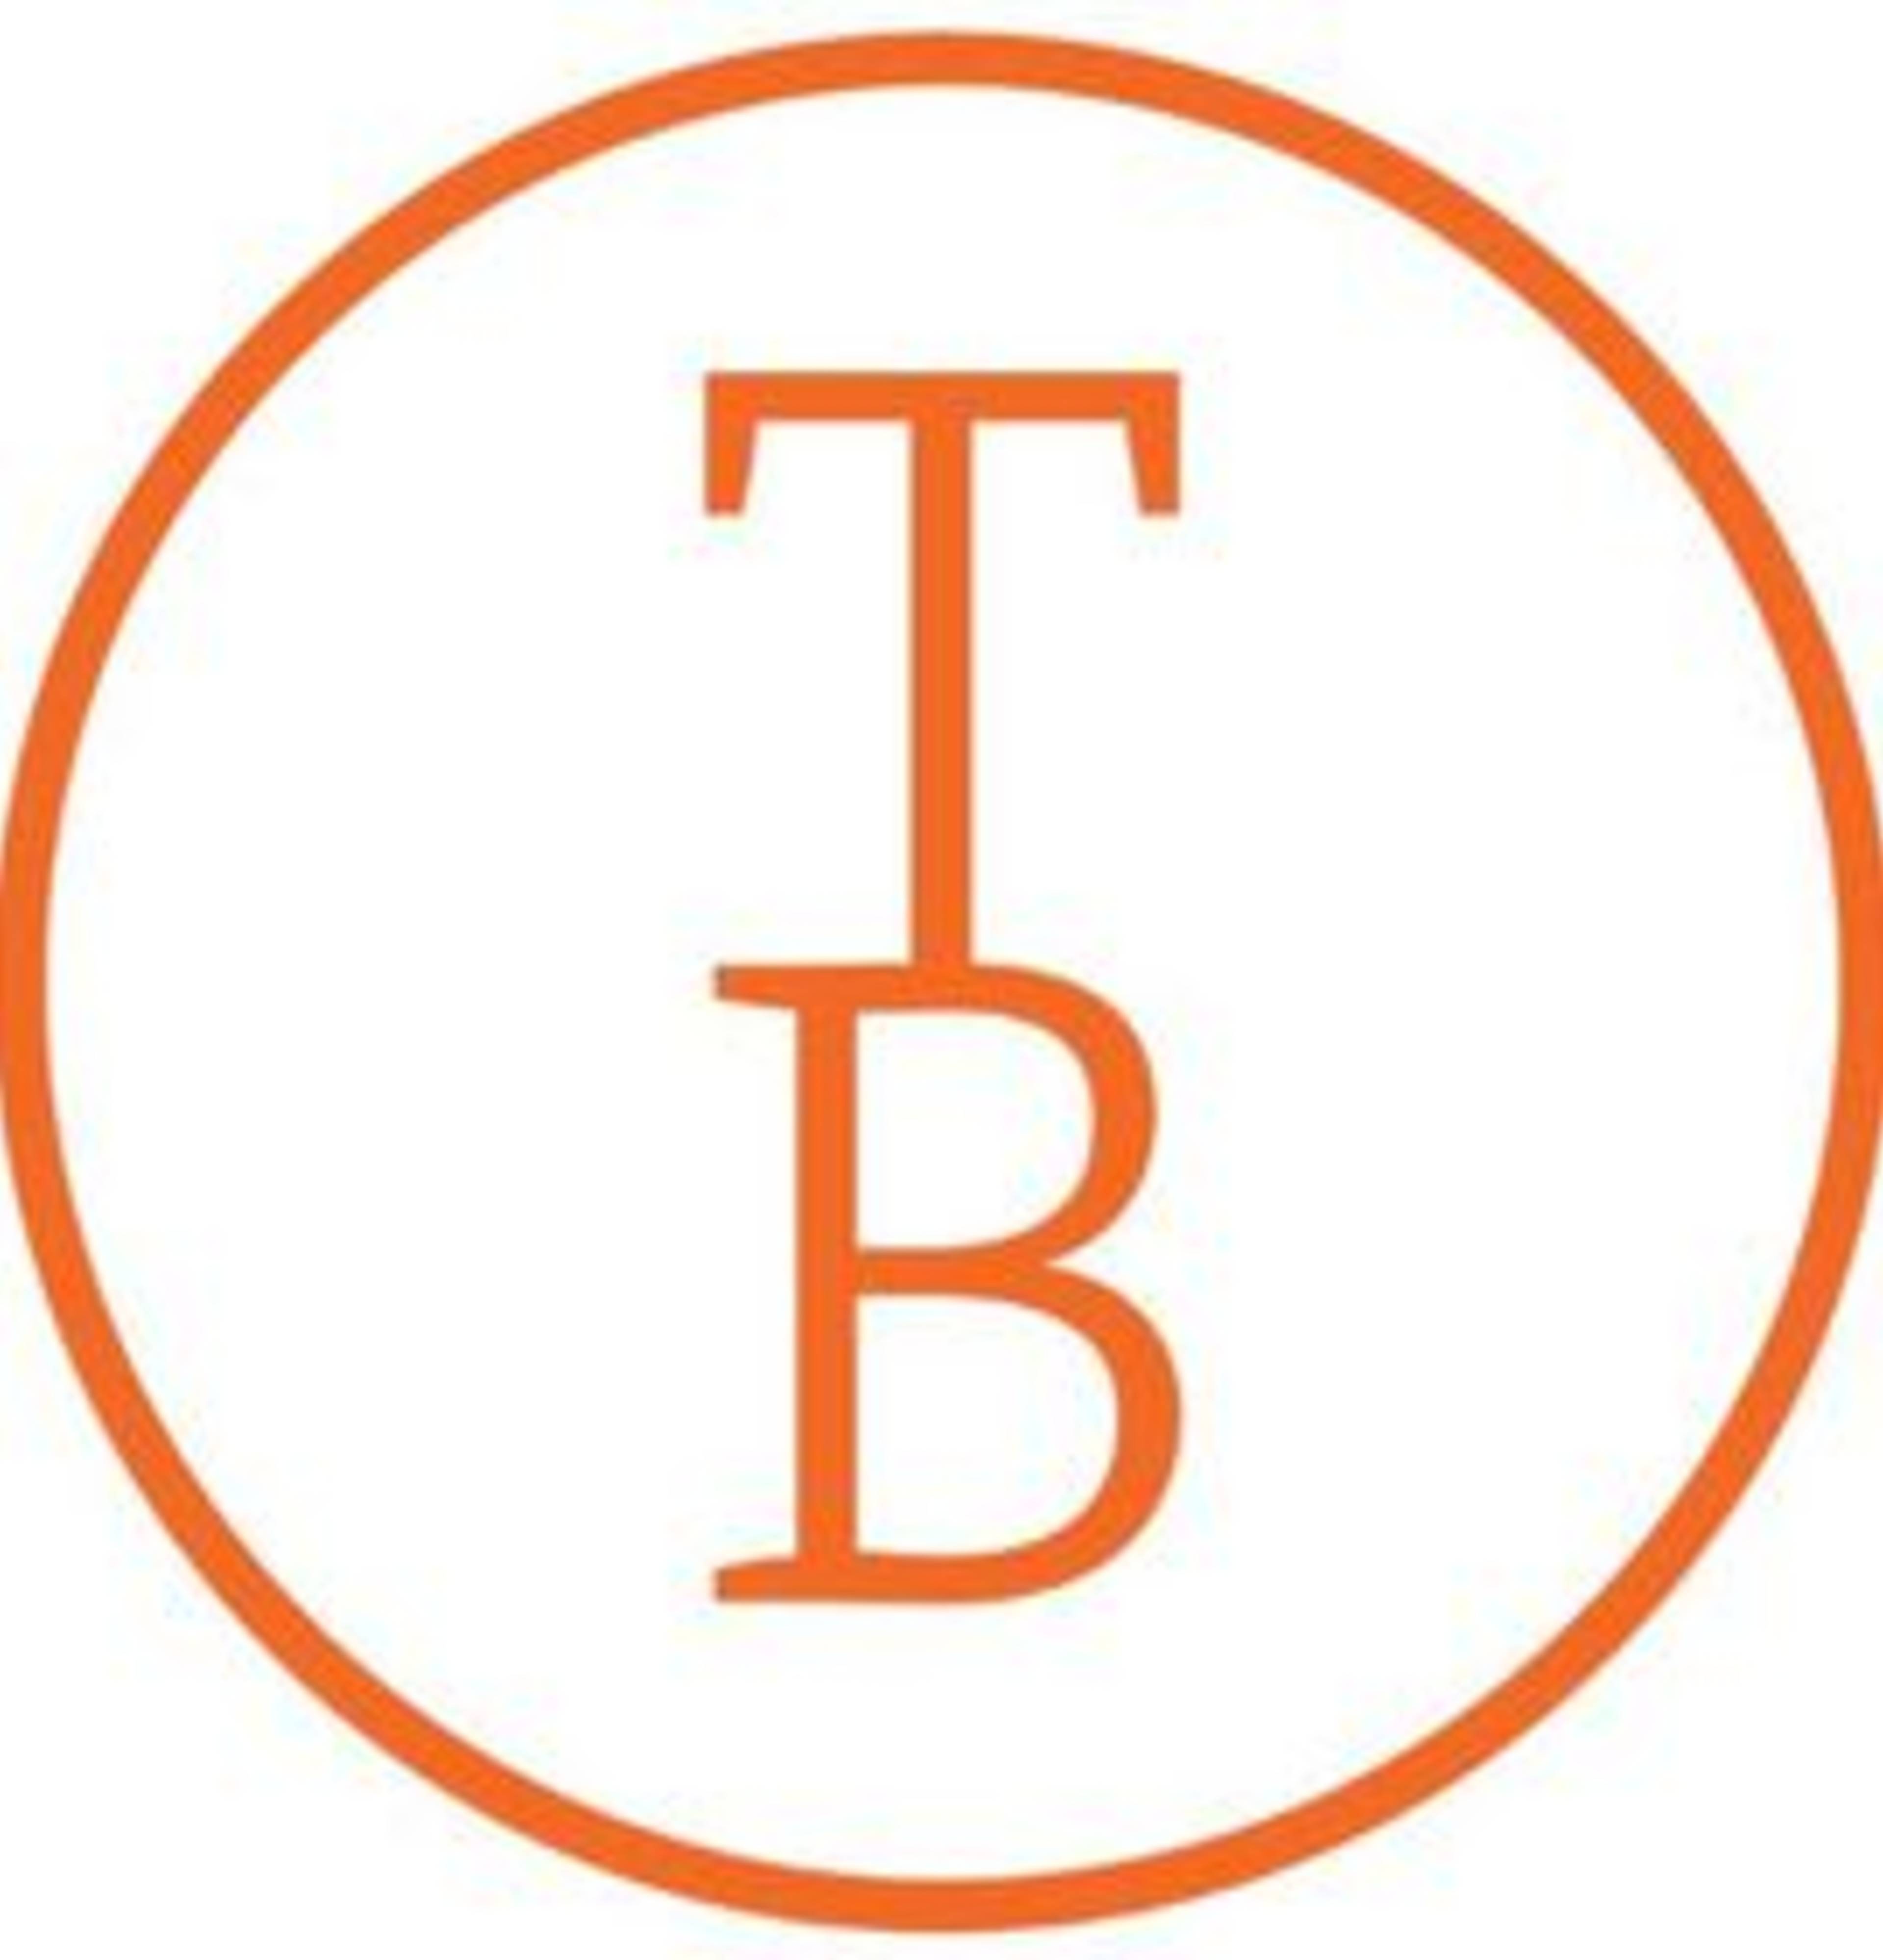 Tanzbüro Berlin logo